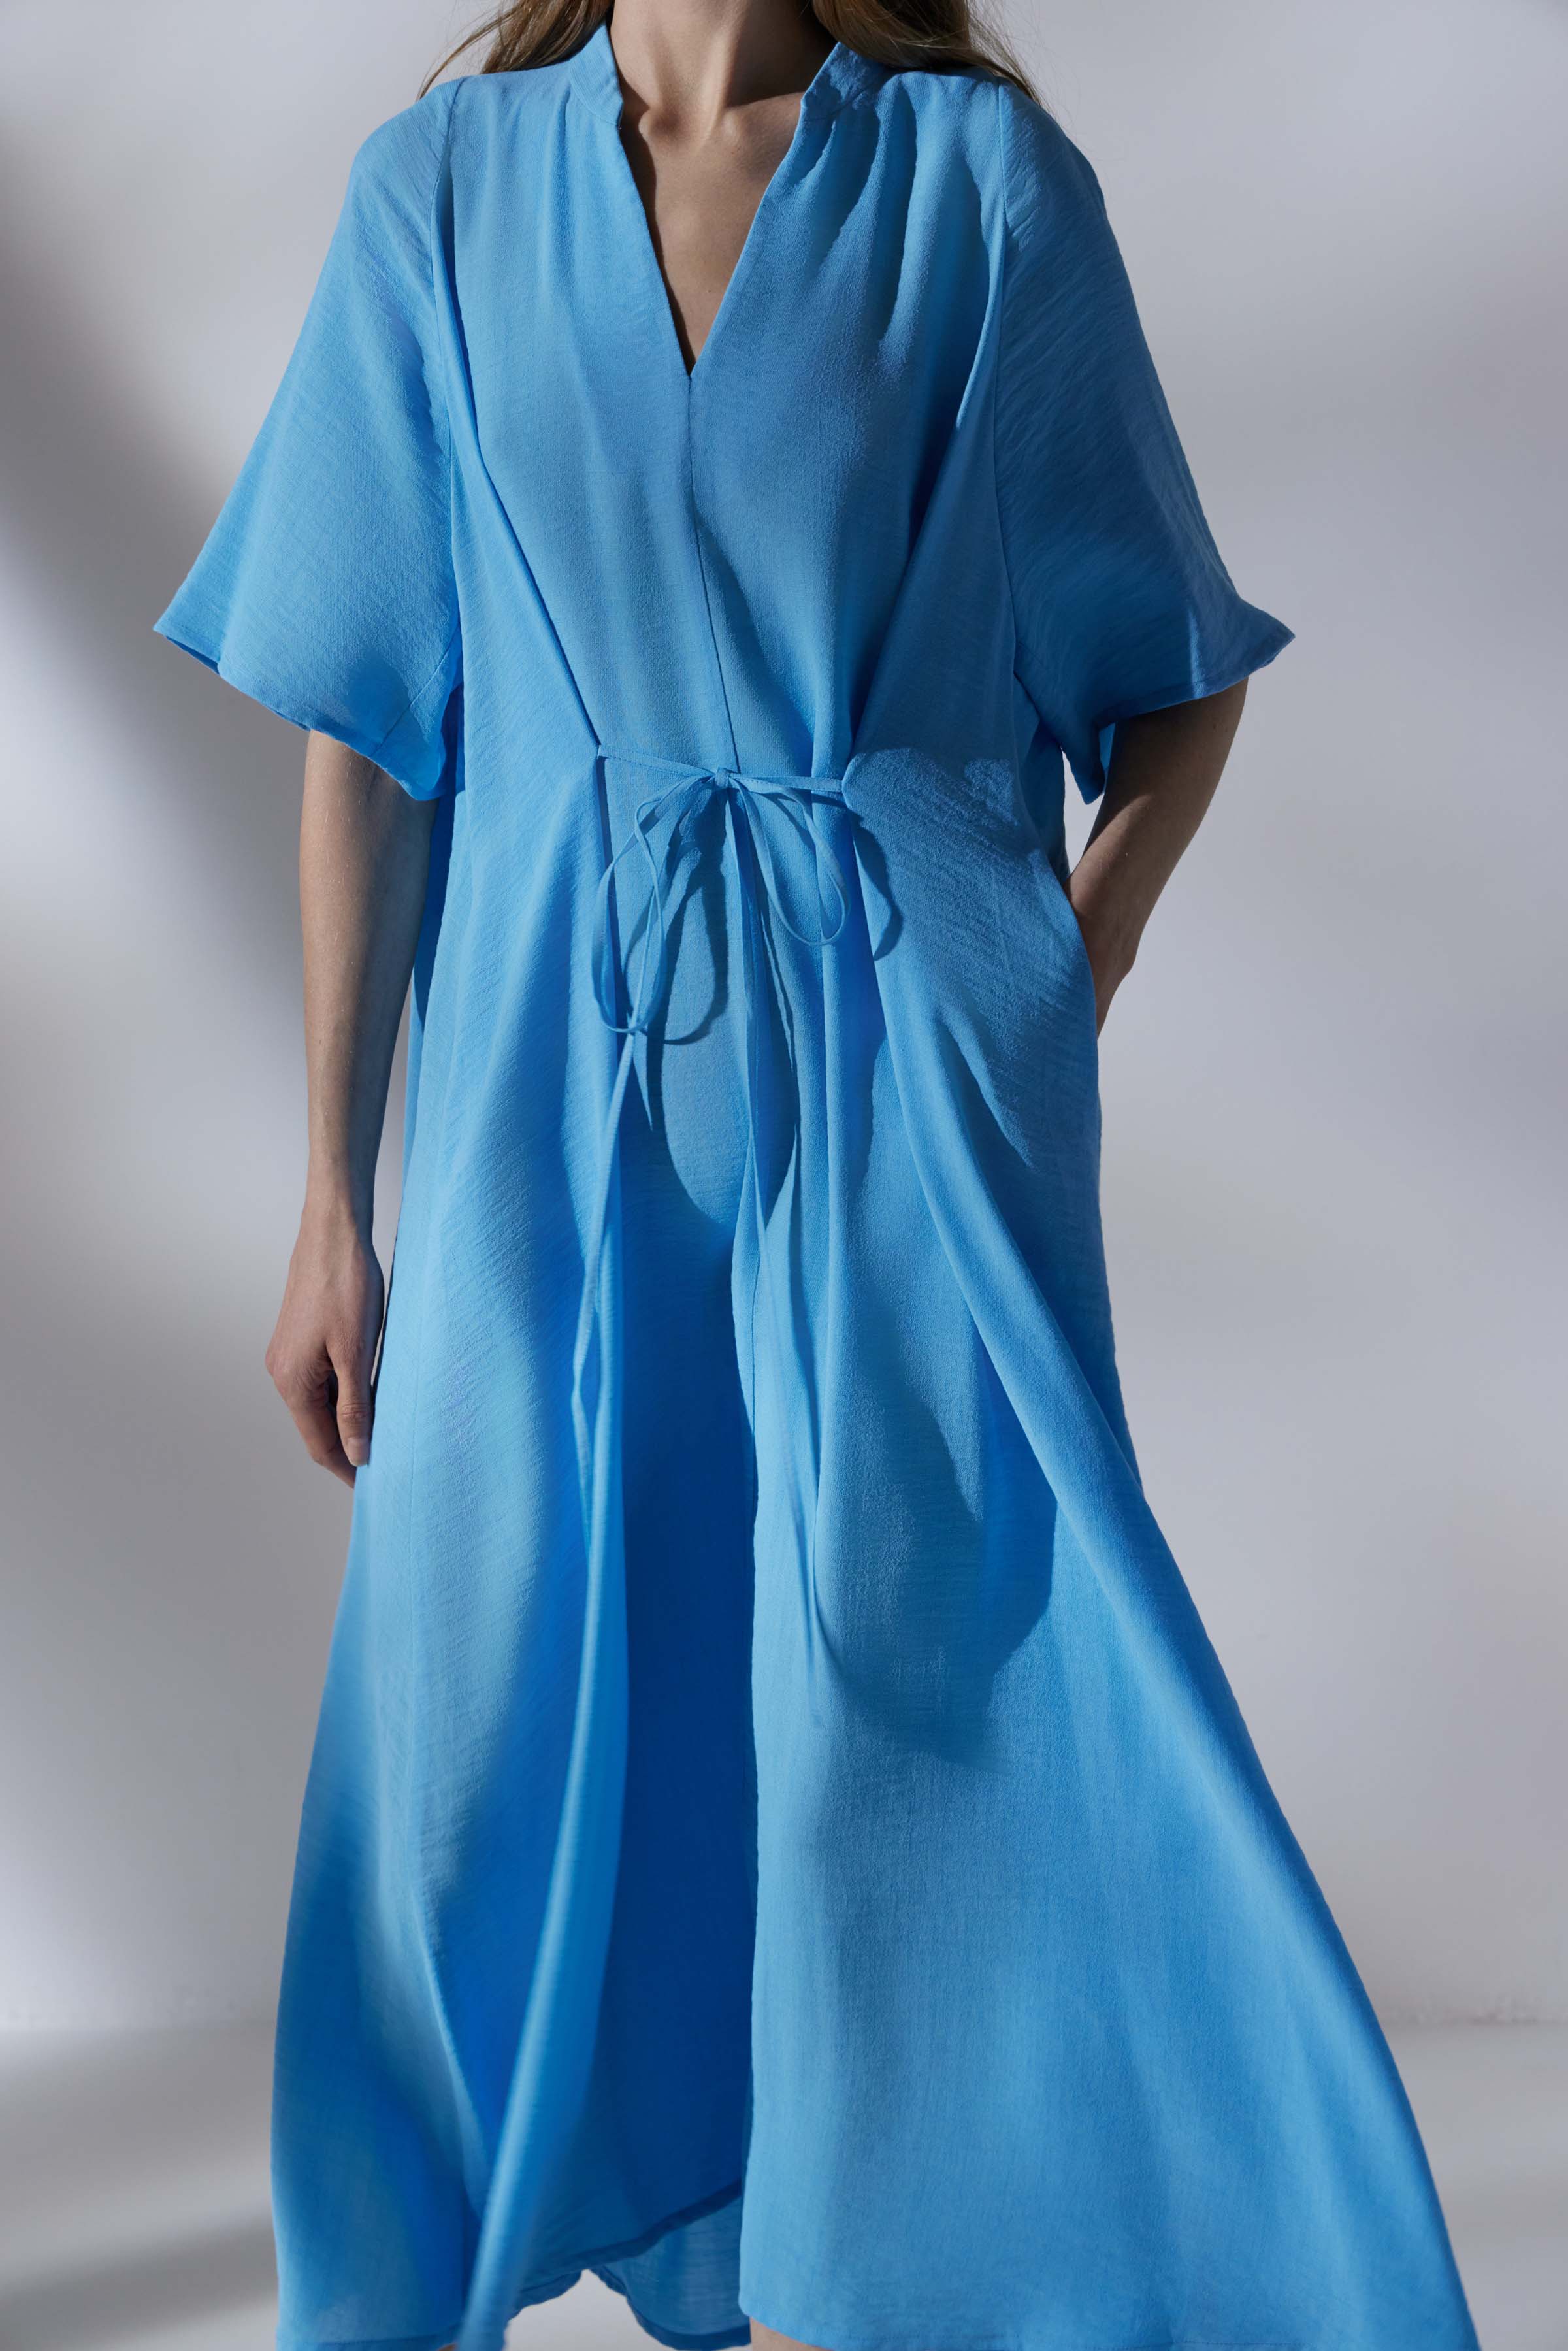 Платье Реглан, завязки, креп 35 Лазурь (azure) от Lesel (Лесель)! Заказывайте по ✆ 8 (800) 777 02 37